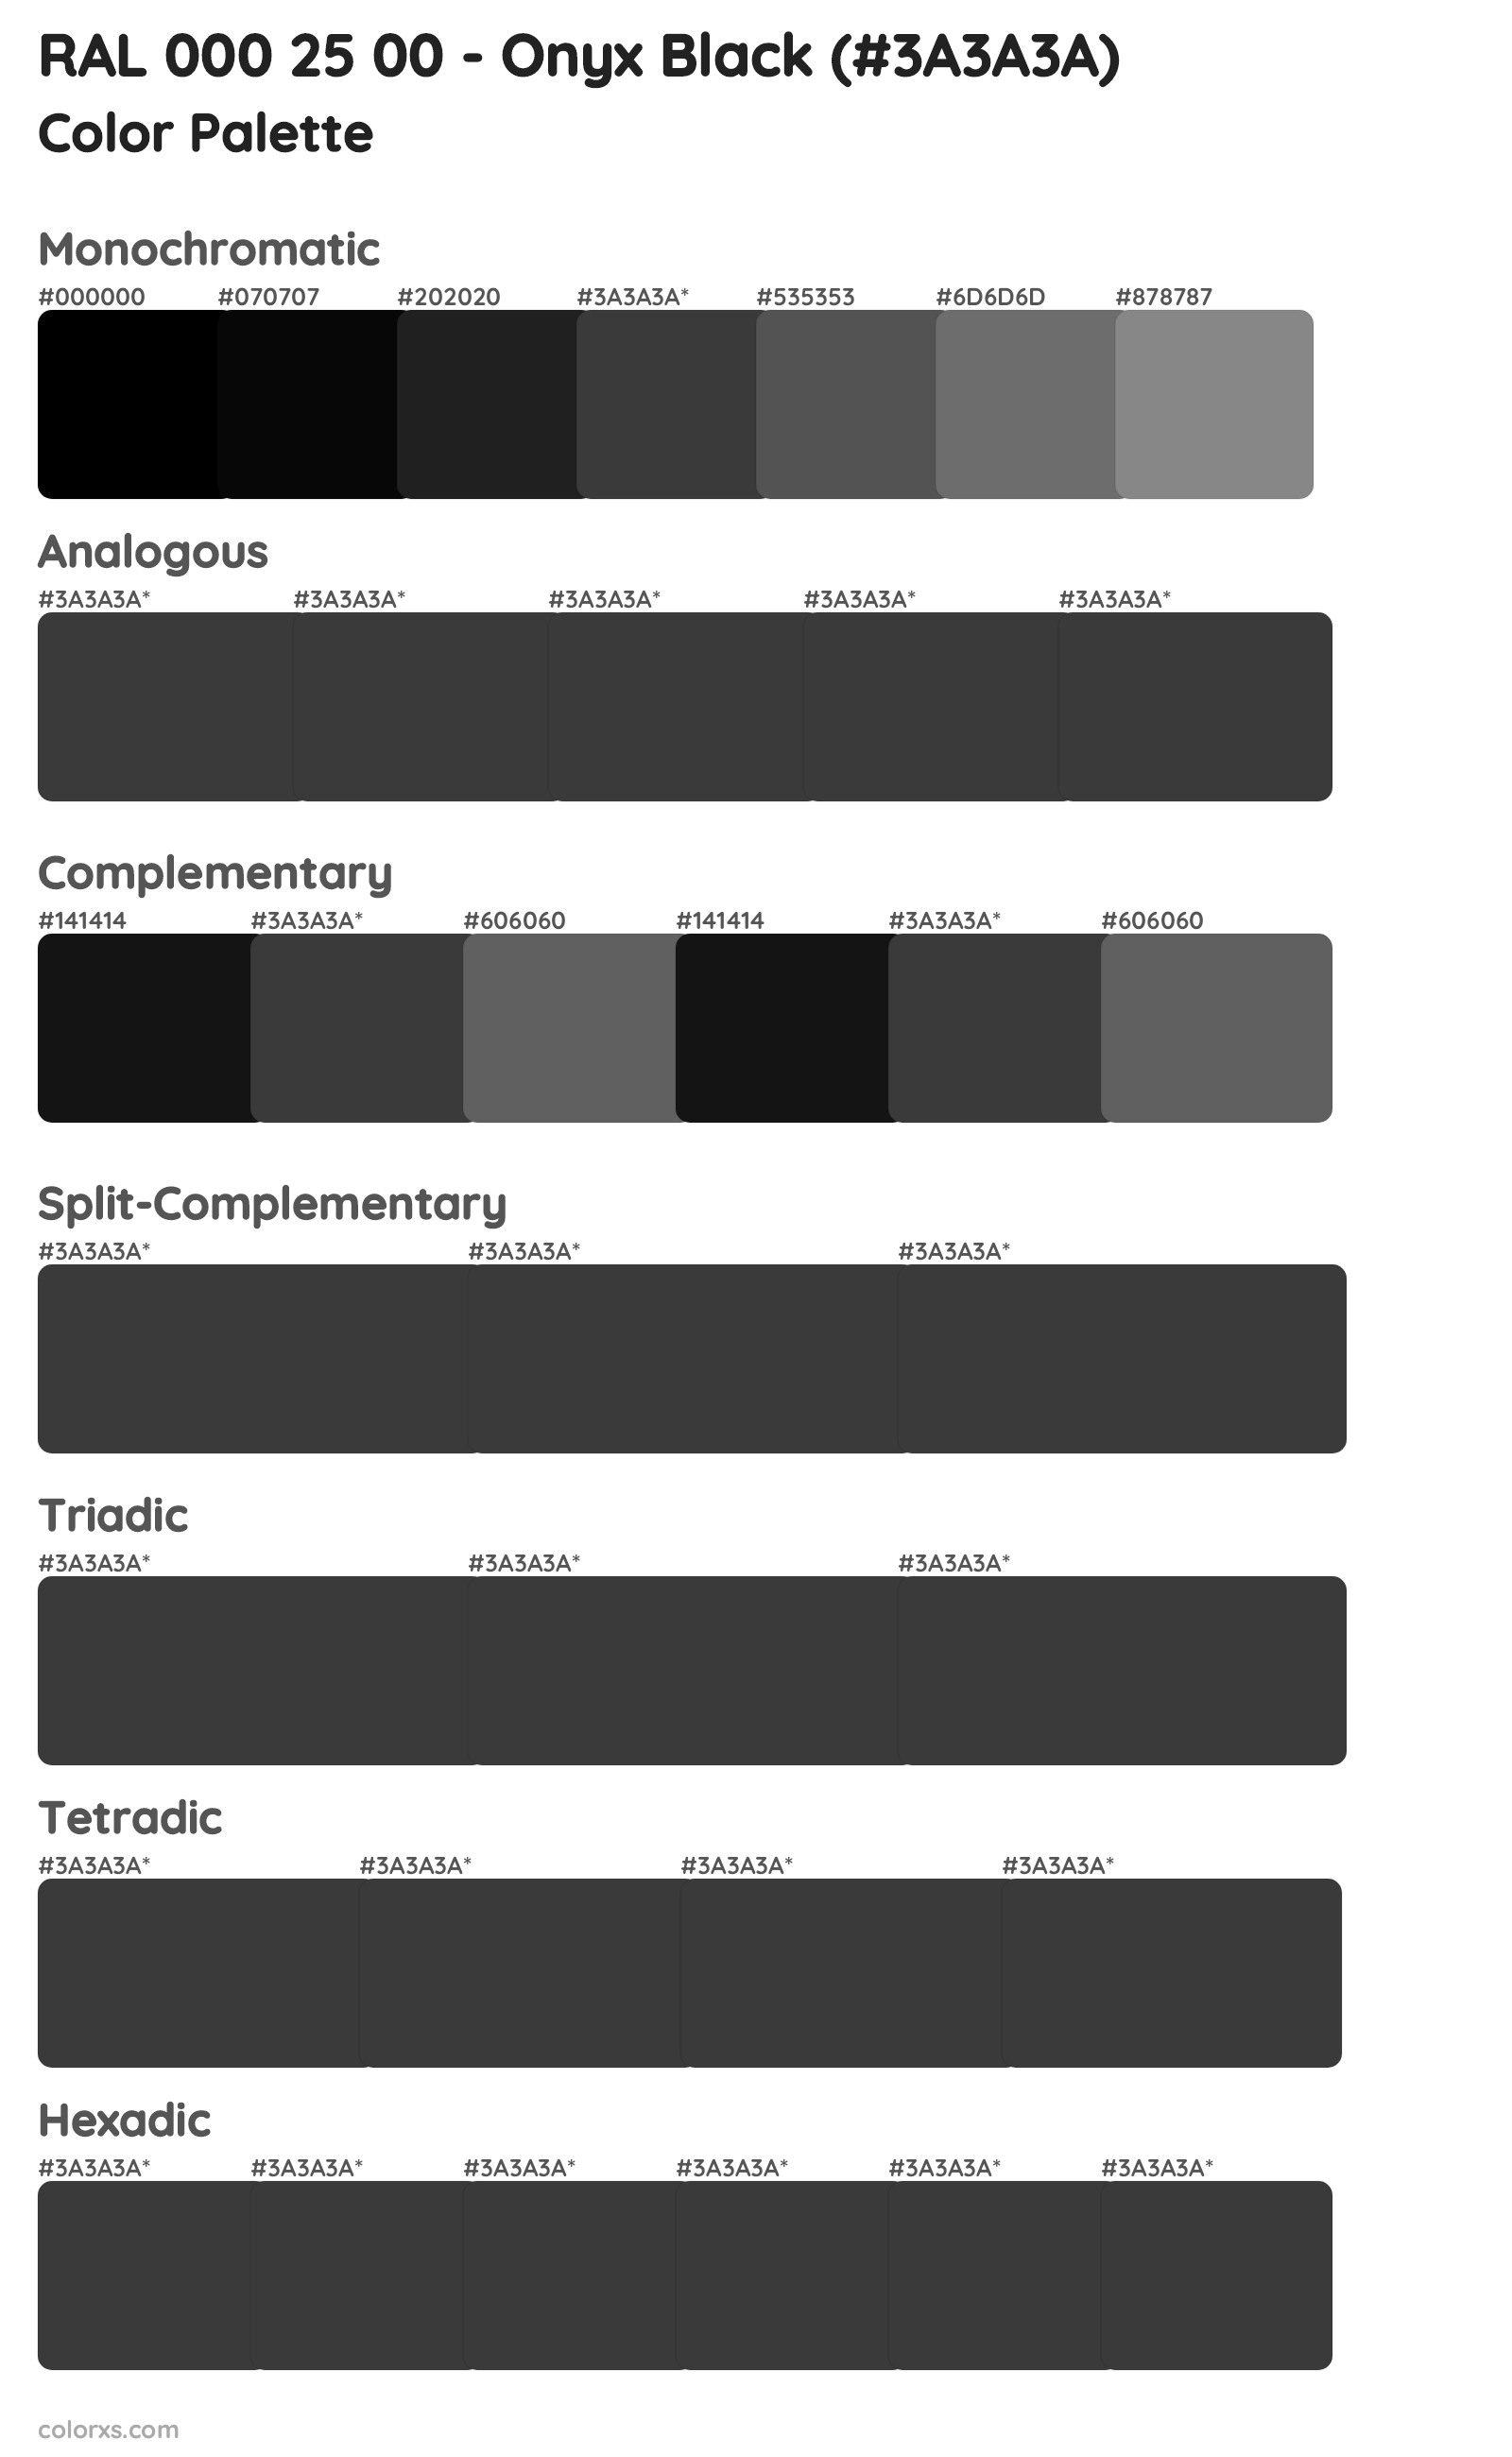 RAL 000 25 00 - Onyx Black Color Scheme Palettes